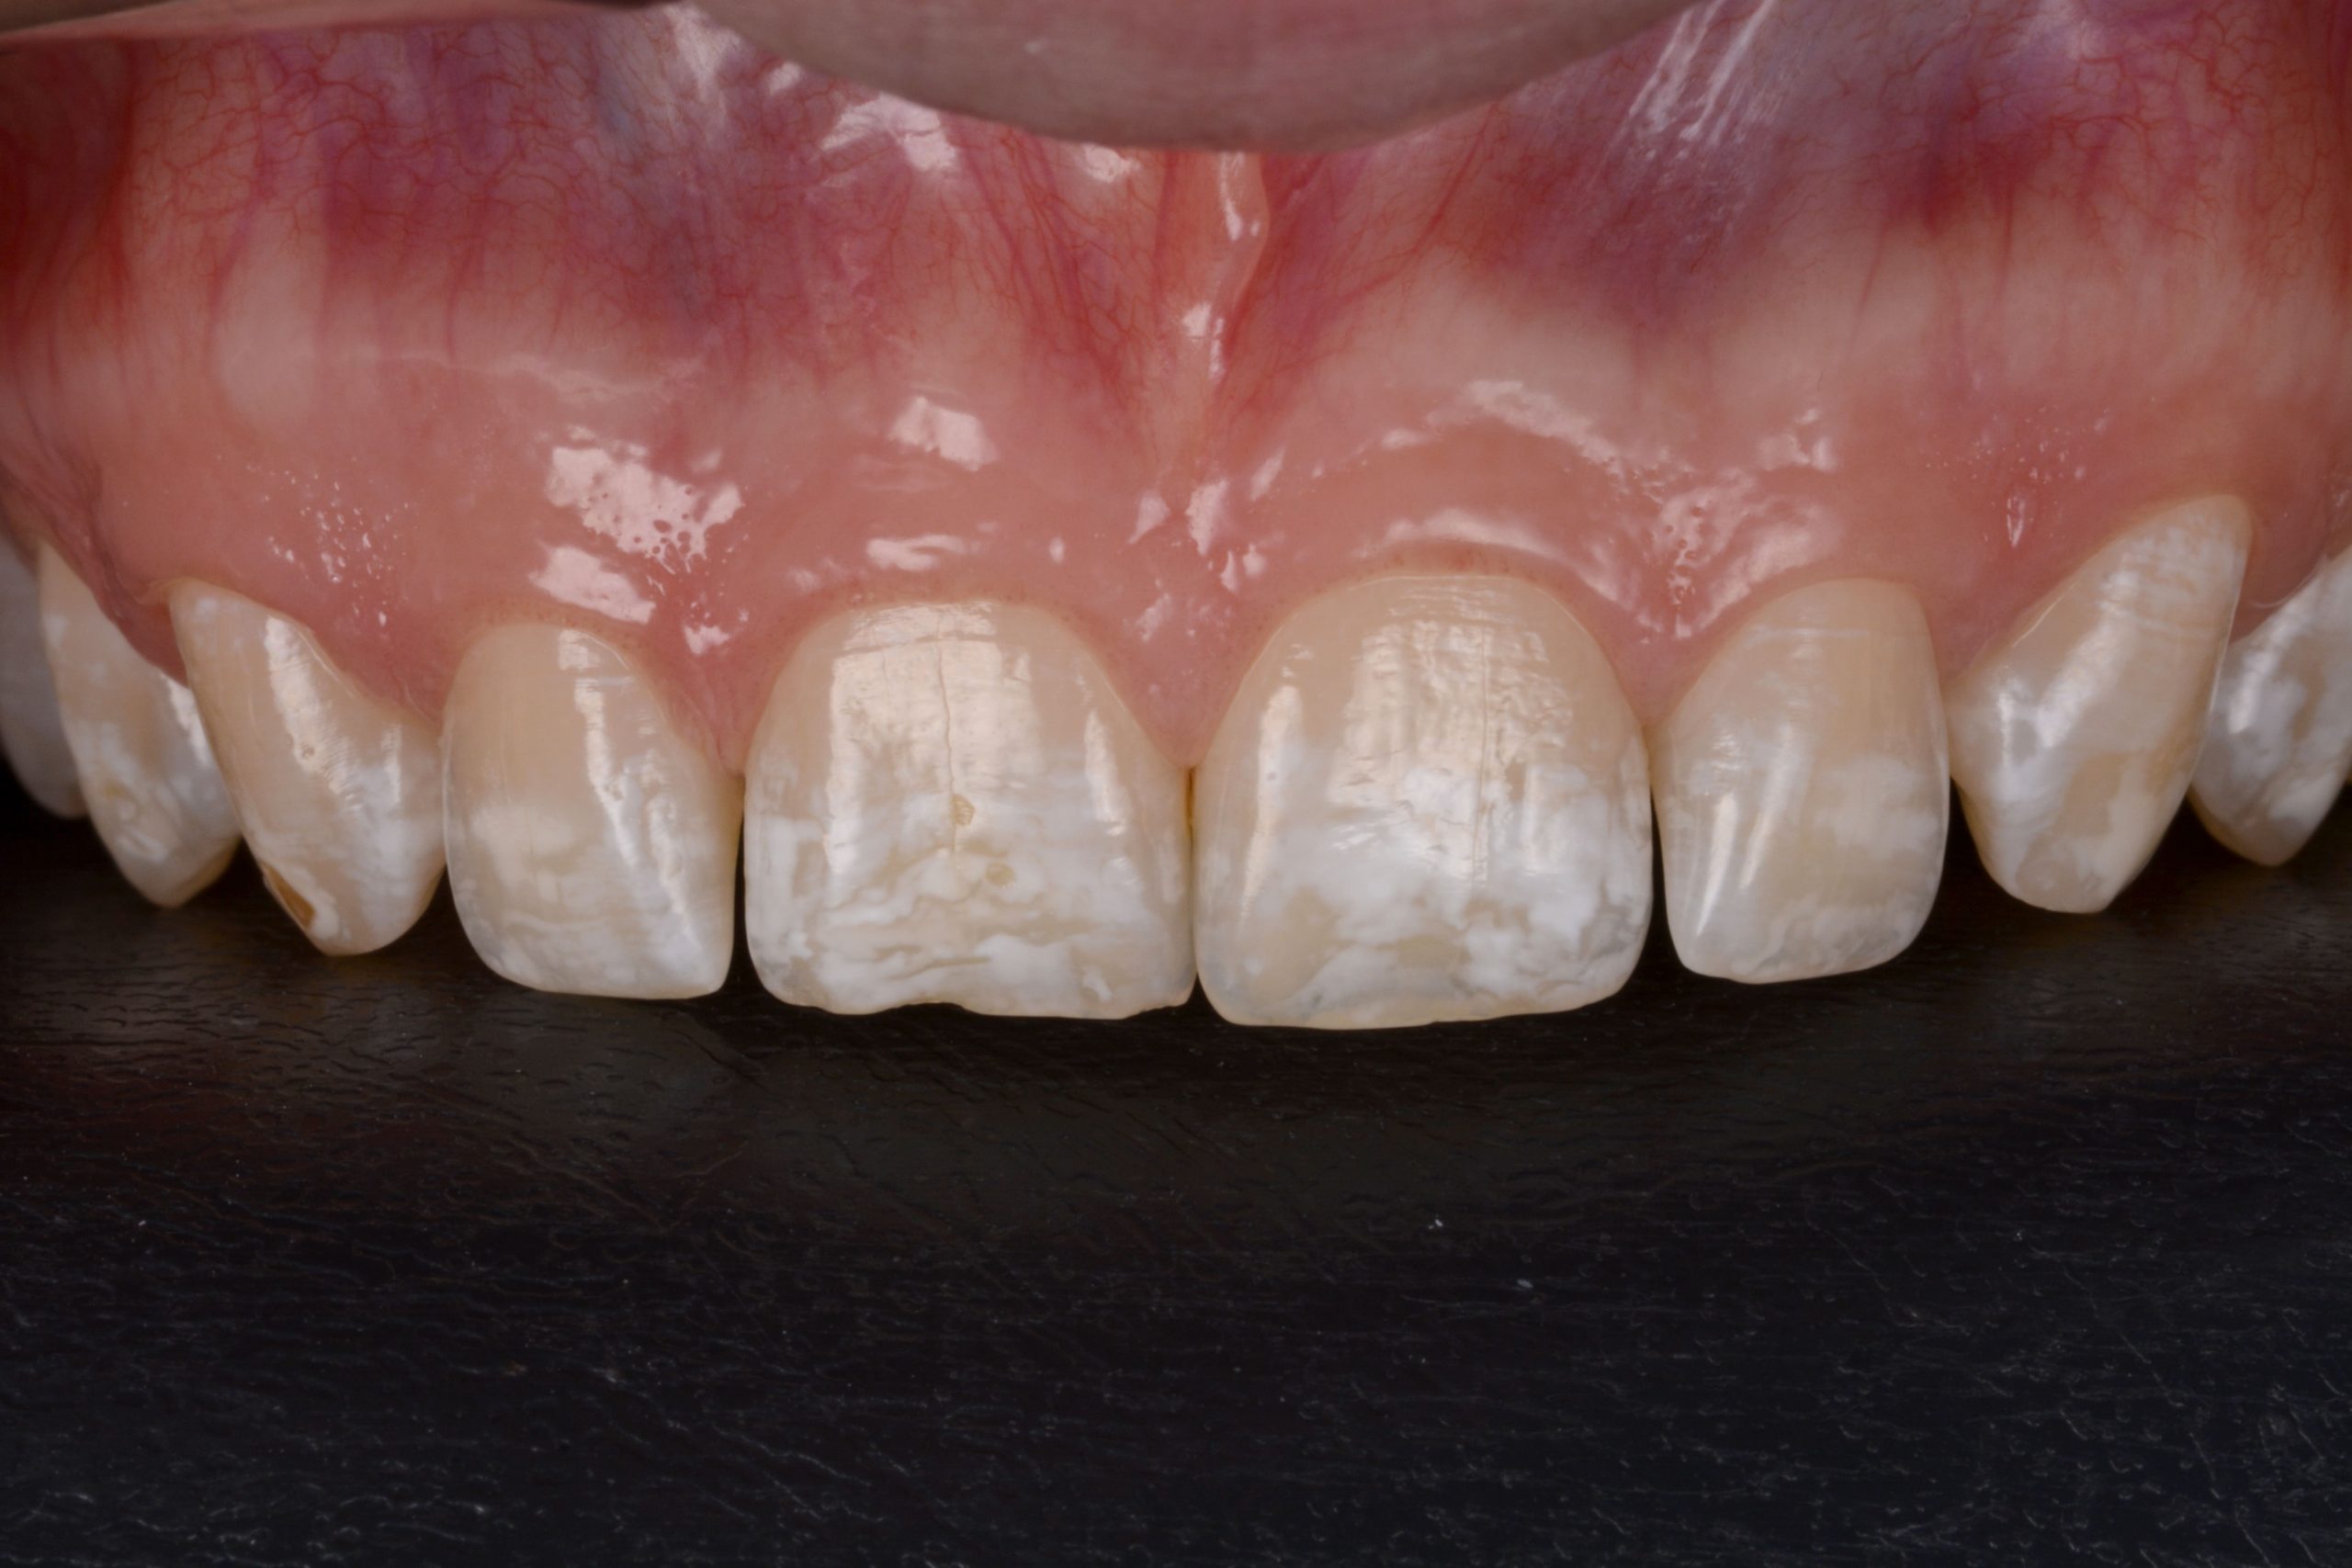 Diagnóstico de fluorose dental em grau moderado com presença de manchas mais intensas entre os dentes 13 ao 23